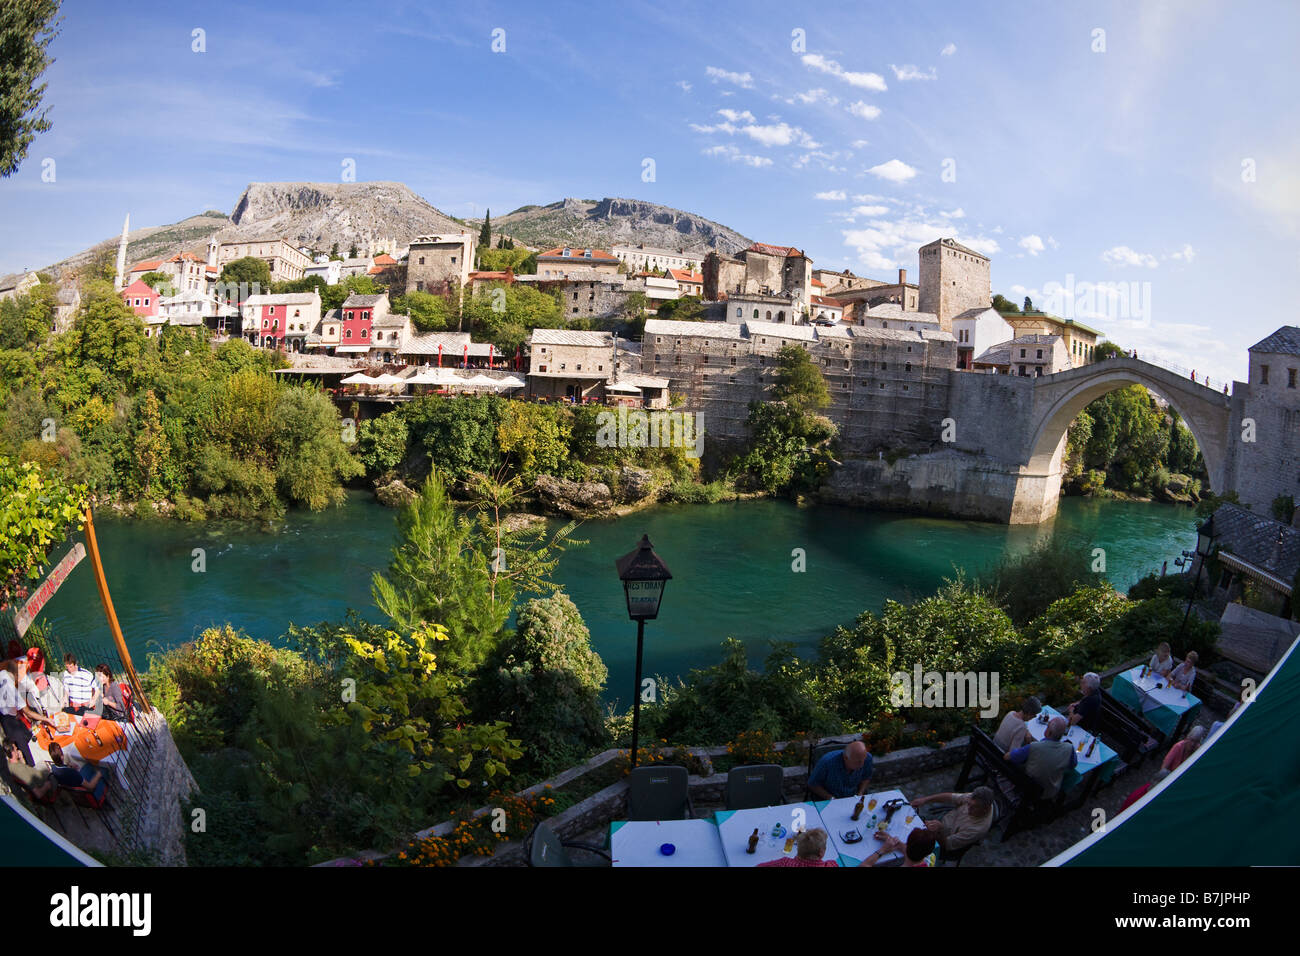 Historische Altstadt von Mostar und restaurierten 16. Jahrhundert Brücke über den Fluss Neretva in Bosnien Herzegowina Europa Stockfoto